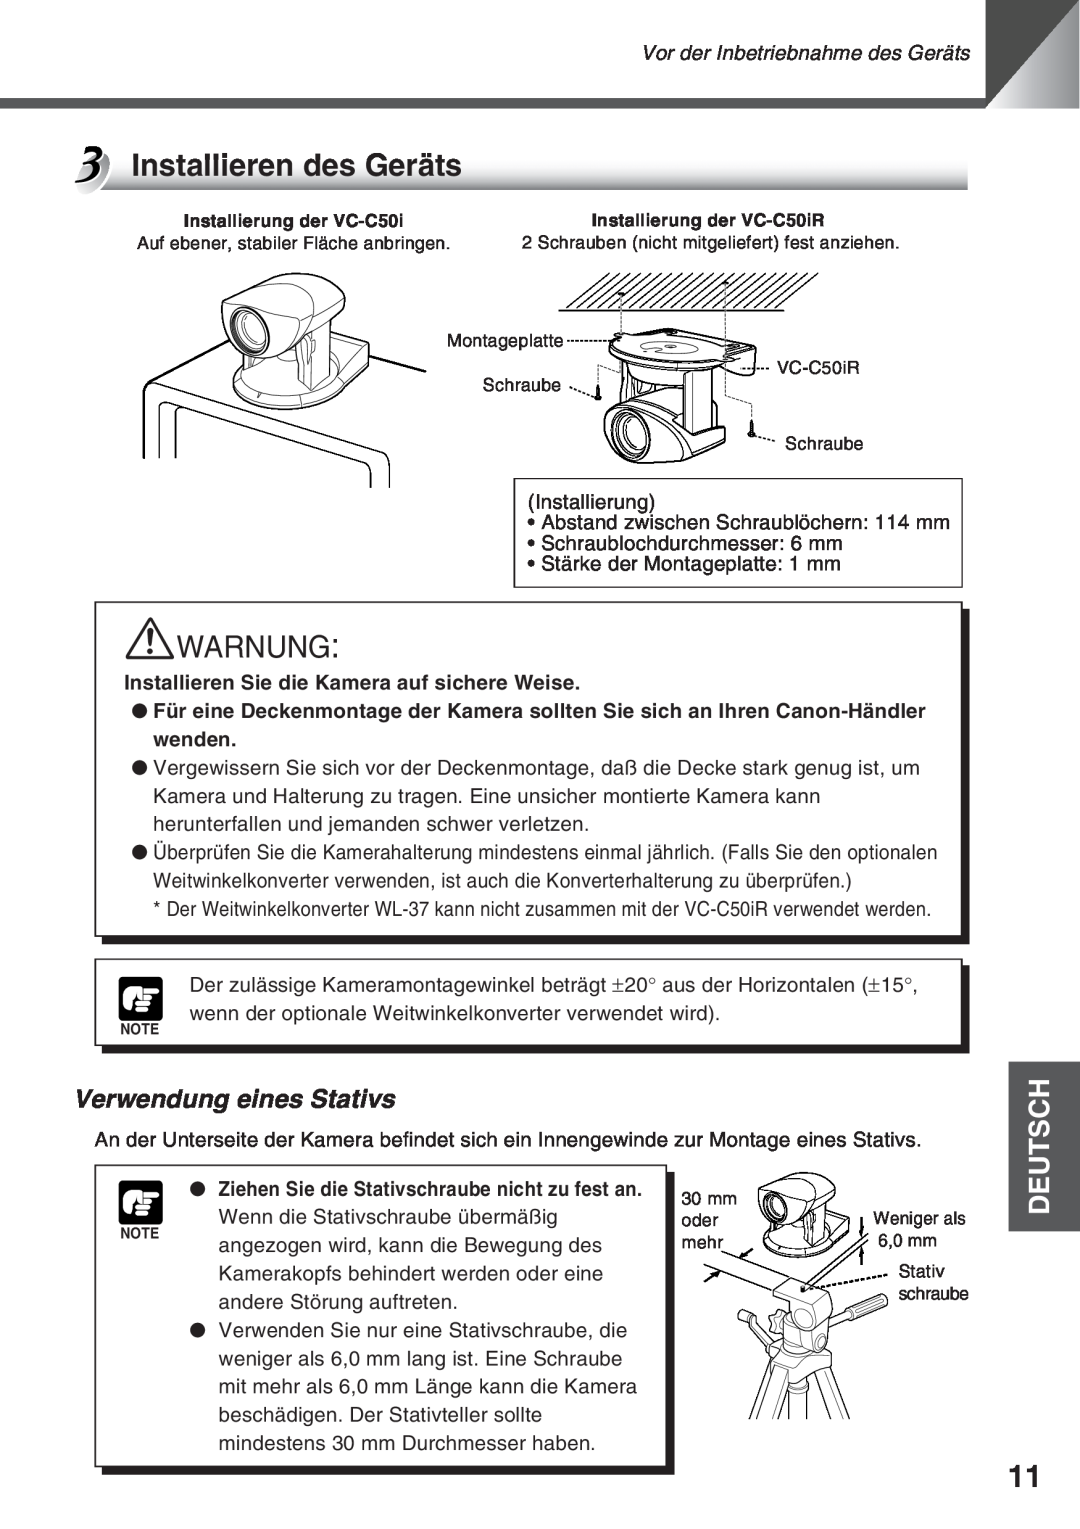 Canon VC-C50i, VC-C50IR instruction manual Installieren des GerŠts, Verwendung eines Stativs, aWARNUNG, Deutsch 